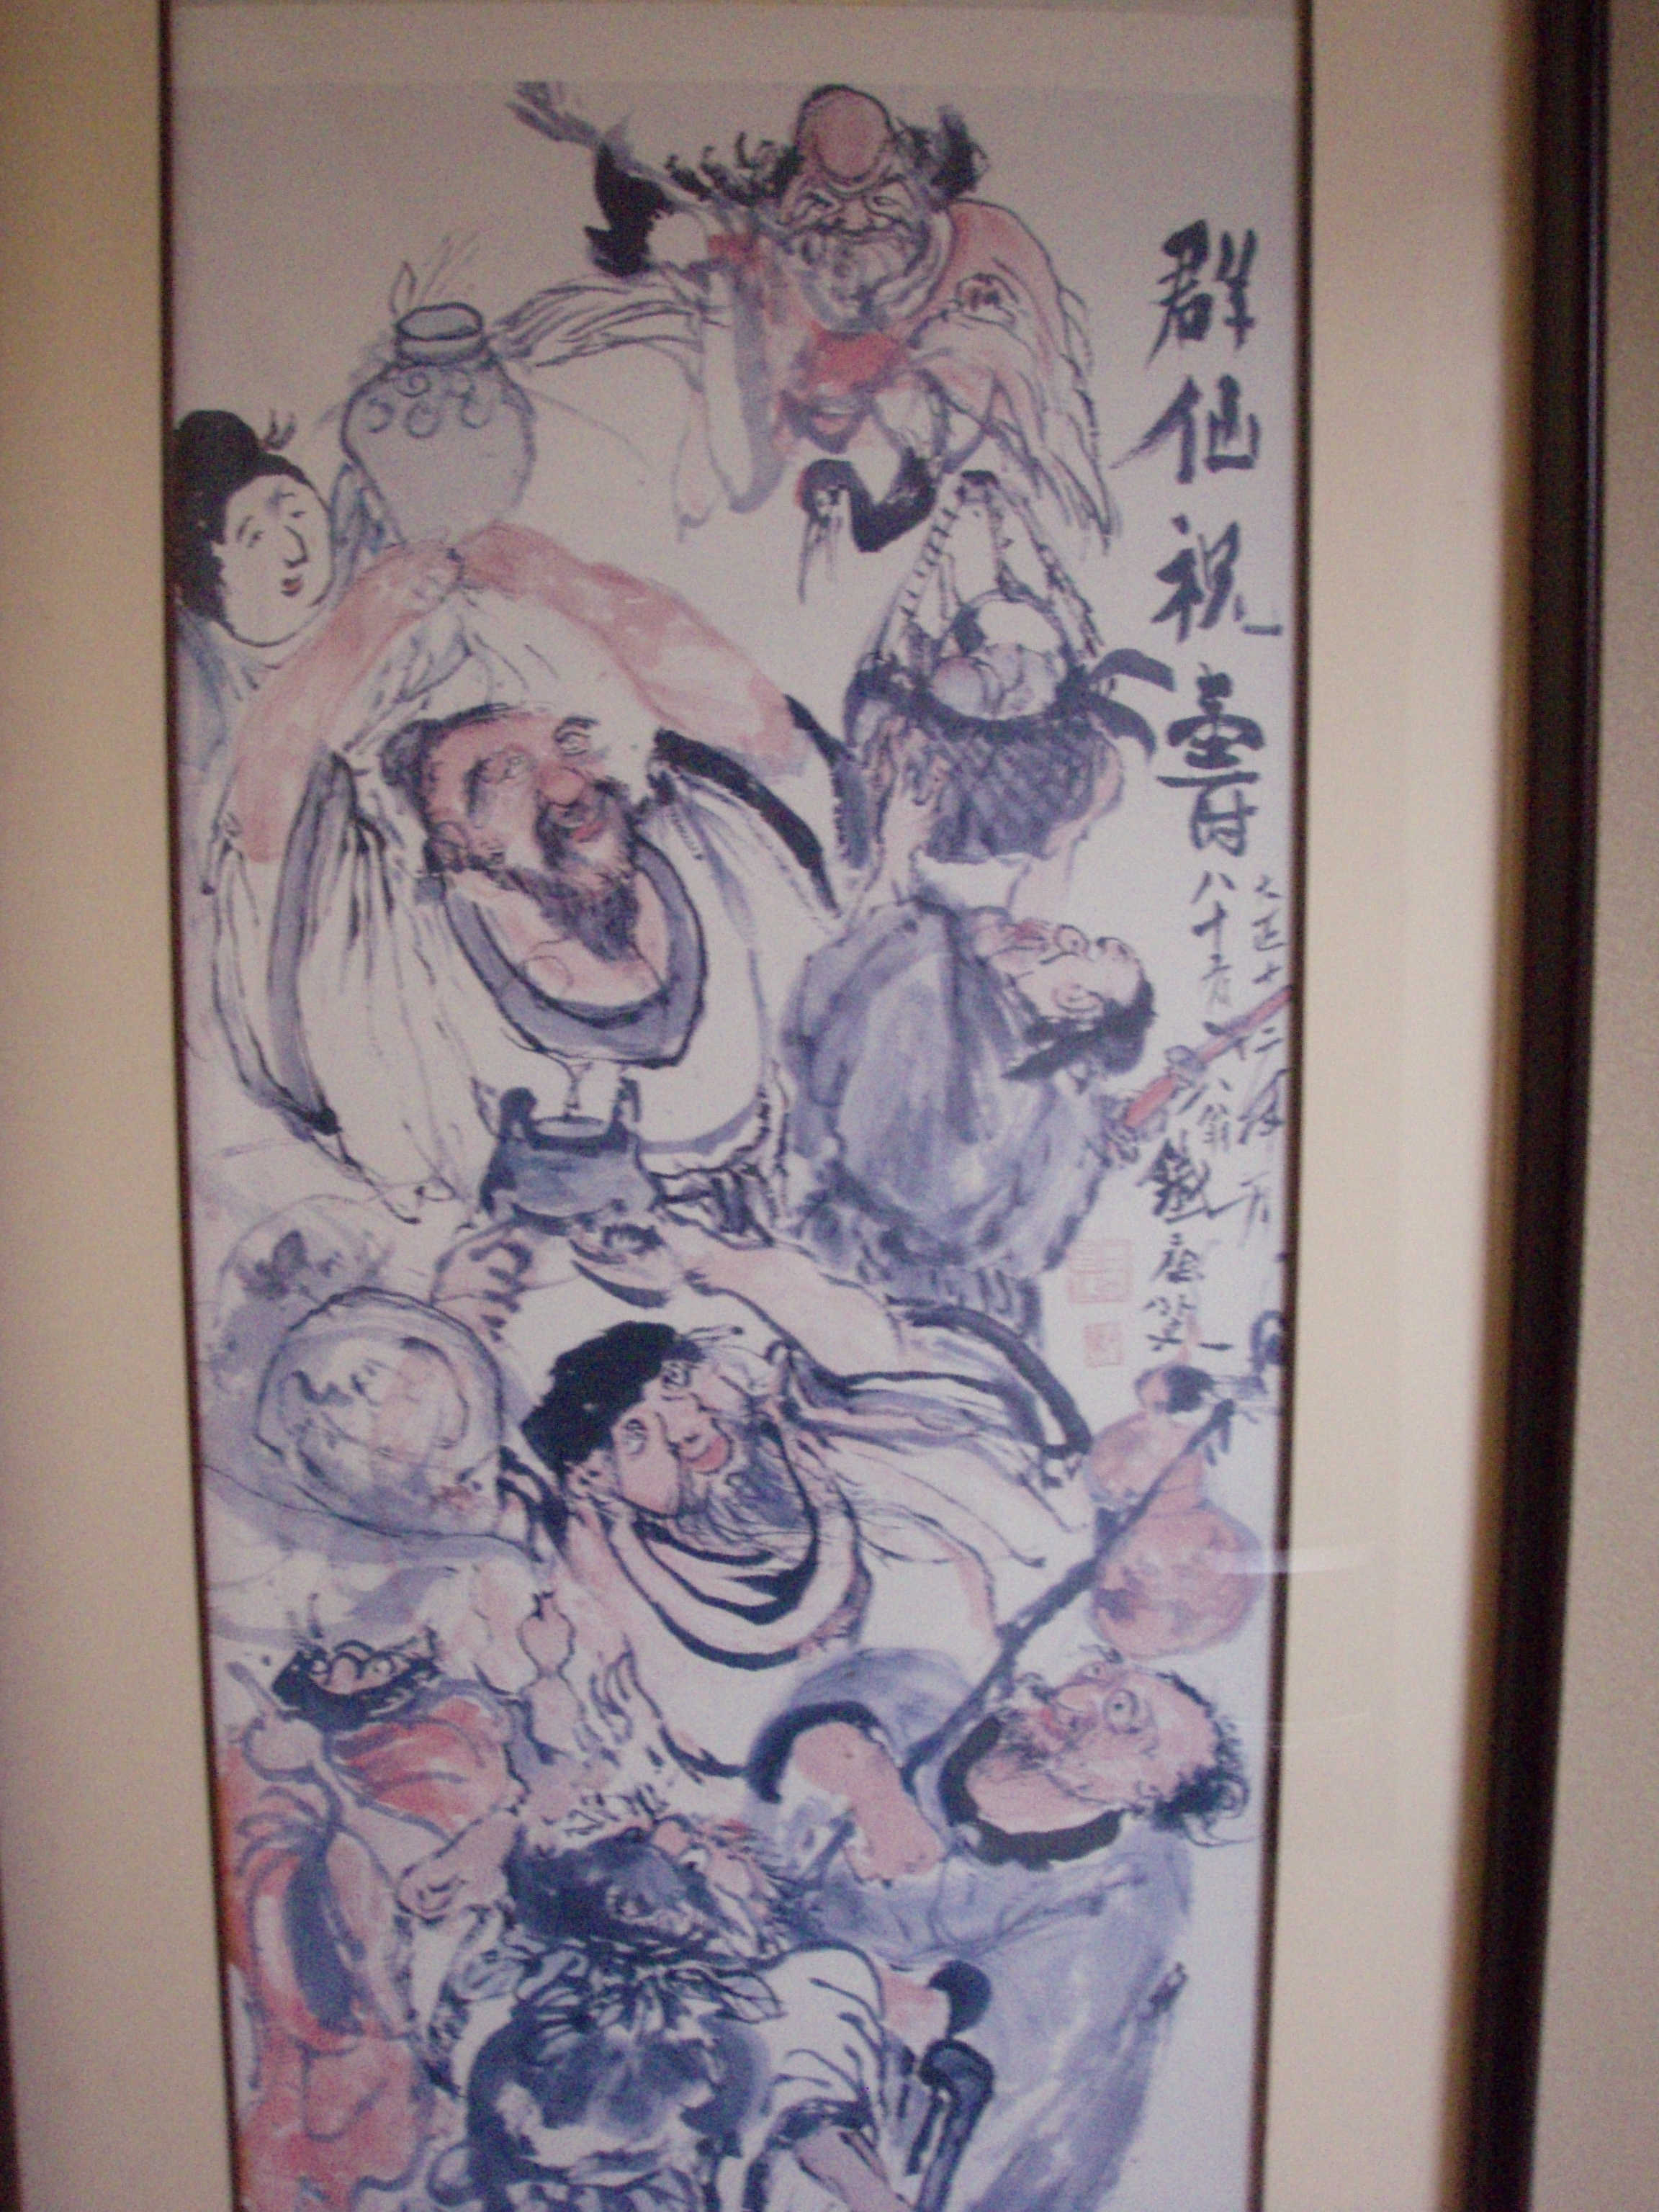 富岡鉄斎の水墨画「群仙祝寿図」である。 今日はクエプランのお客様２ 